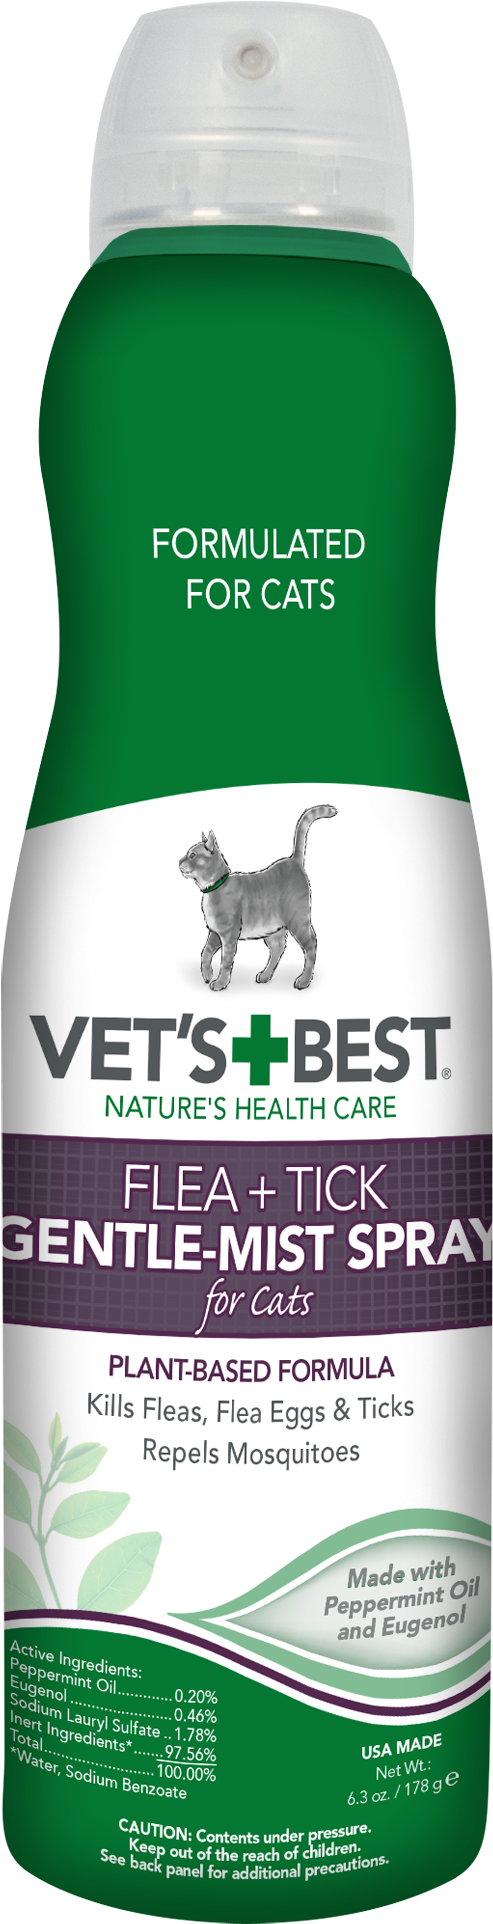 Vet's Best Flea And Tick Gentle-mist Spray For Cats, - Vets Best Flea And Tick Spray Clipart (2000x2000), Png Download